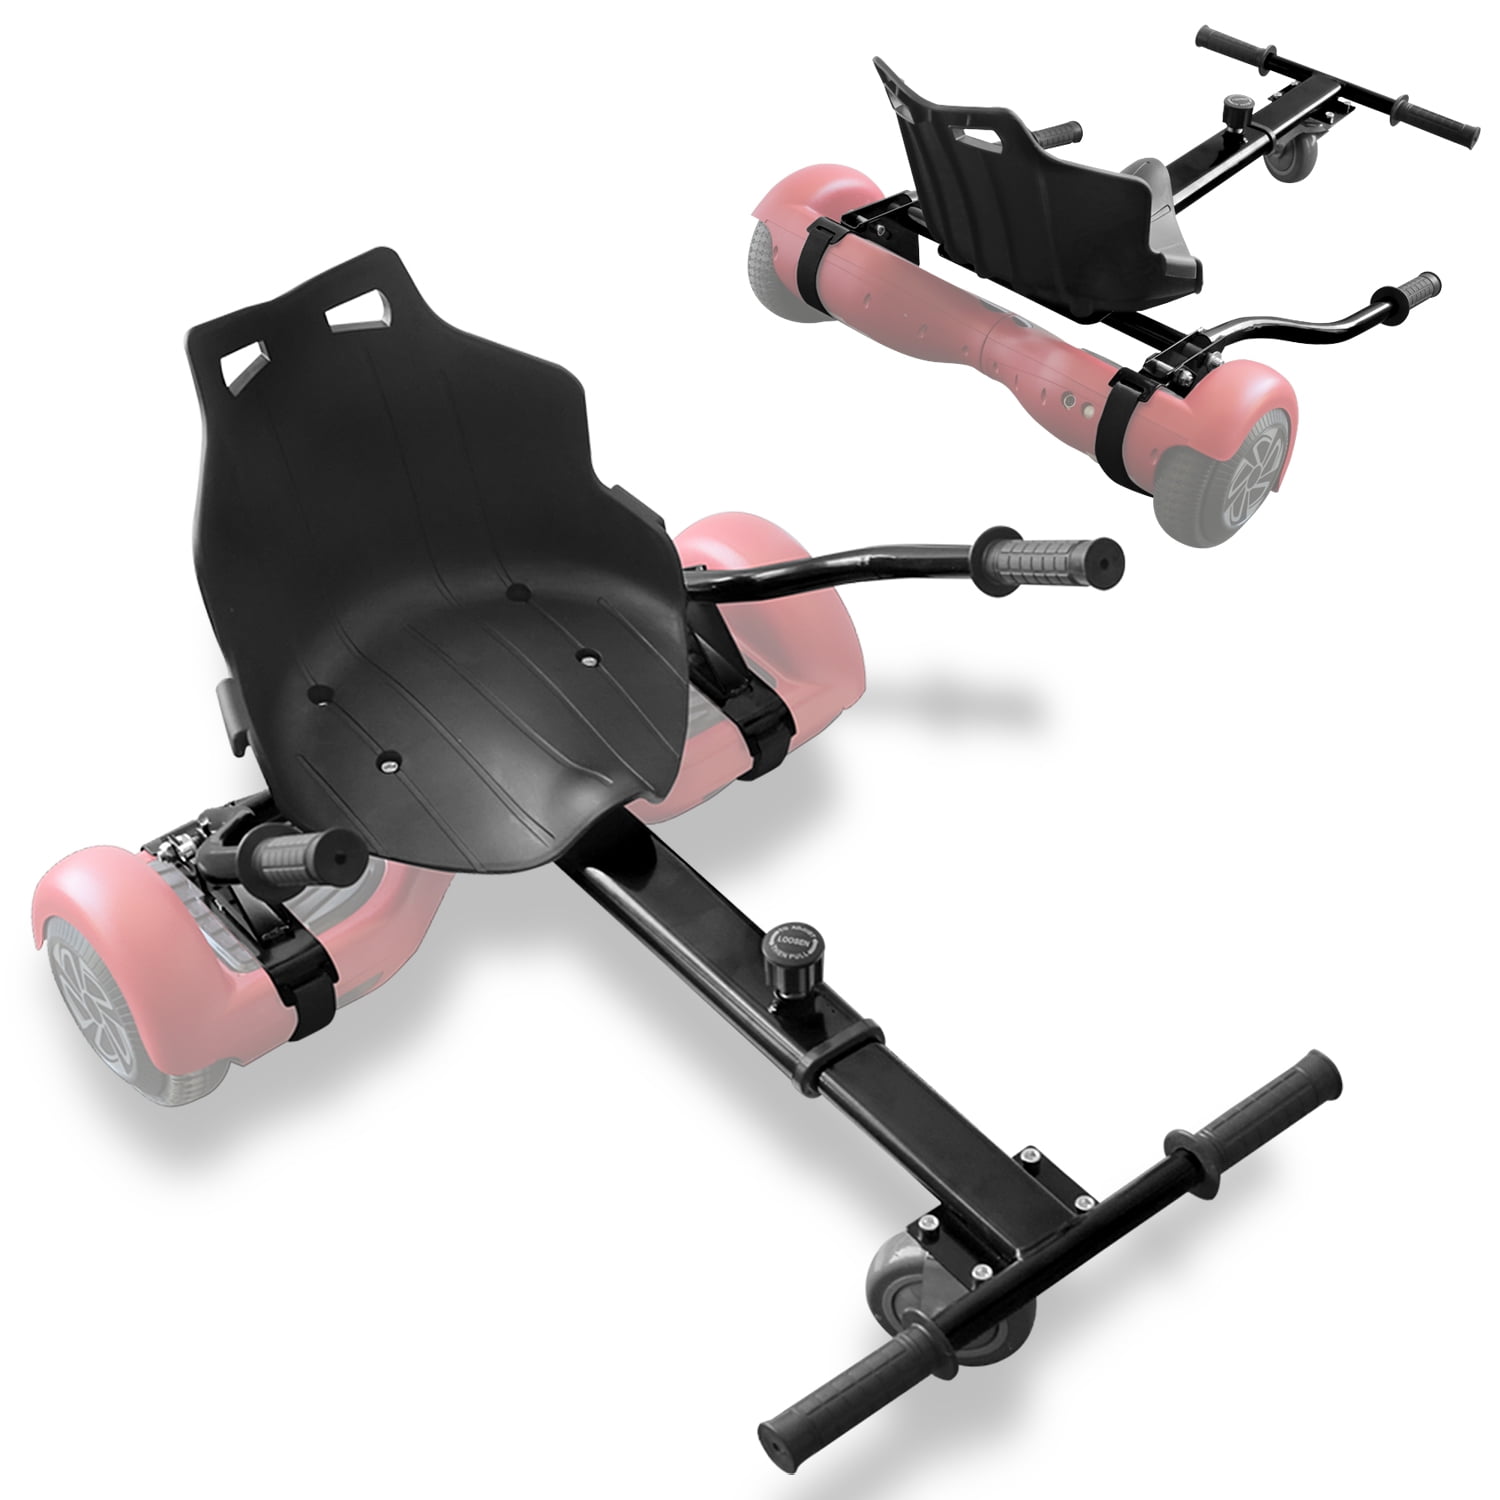 Green Adjustable Go Kart Cart HoverKart Hovercart Stand Seat Holder f Hoverboard 